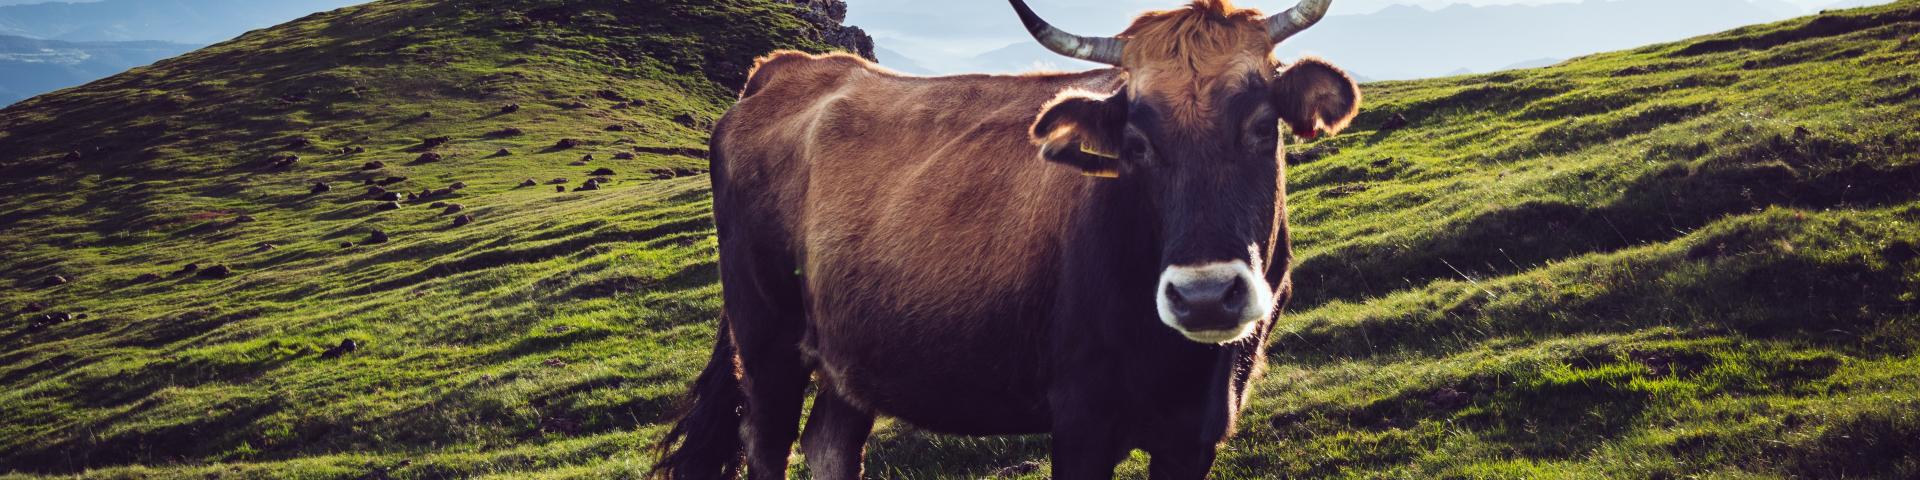 Bruine koe op een berg